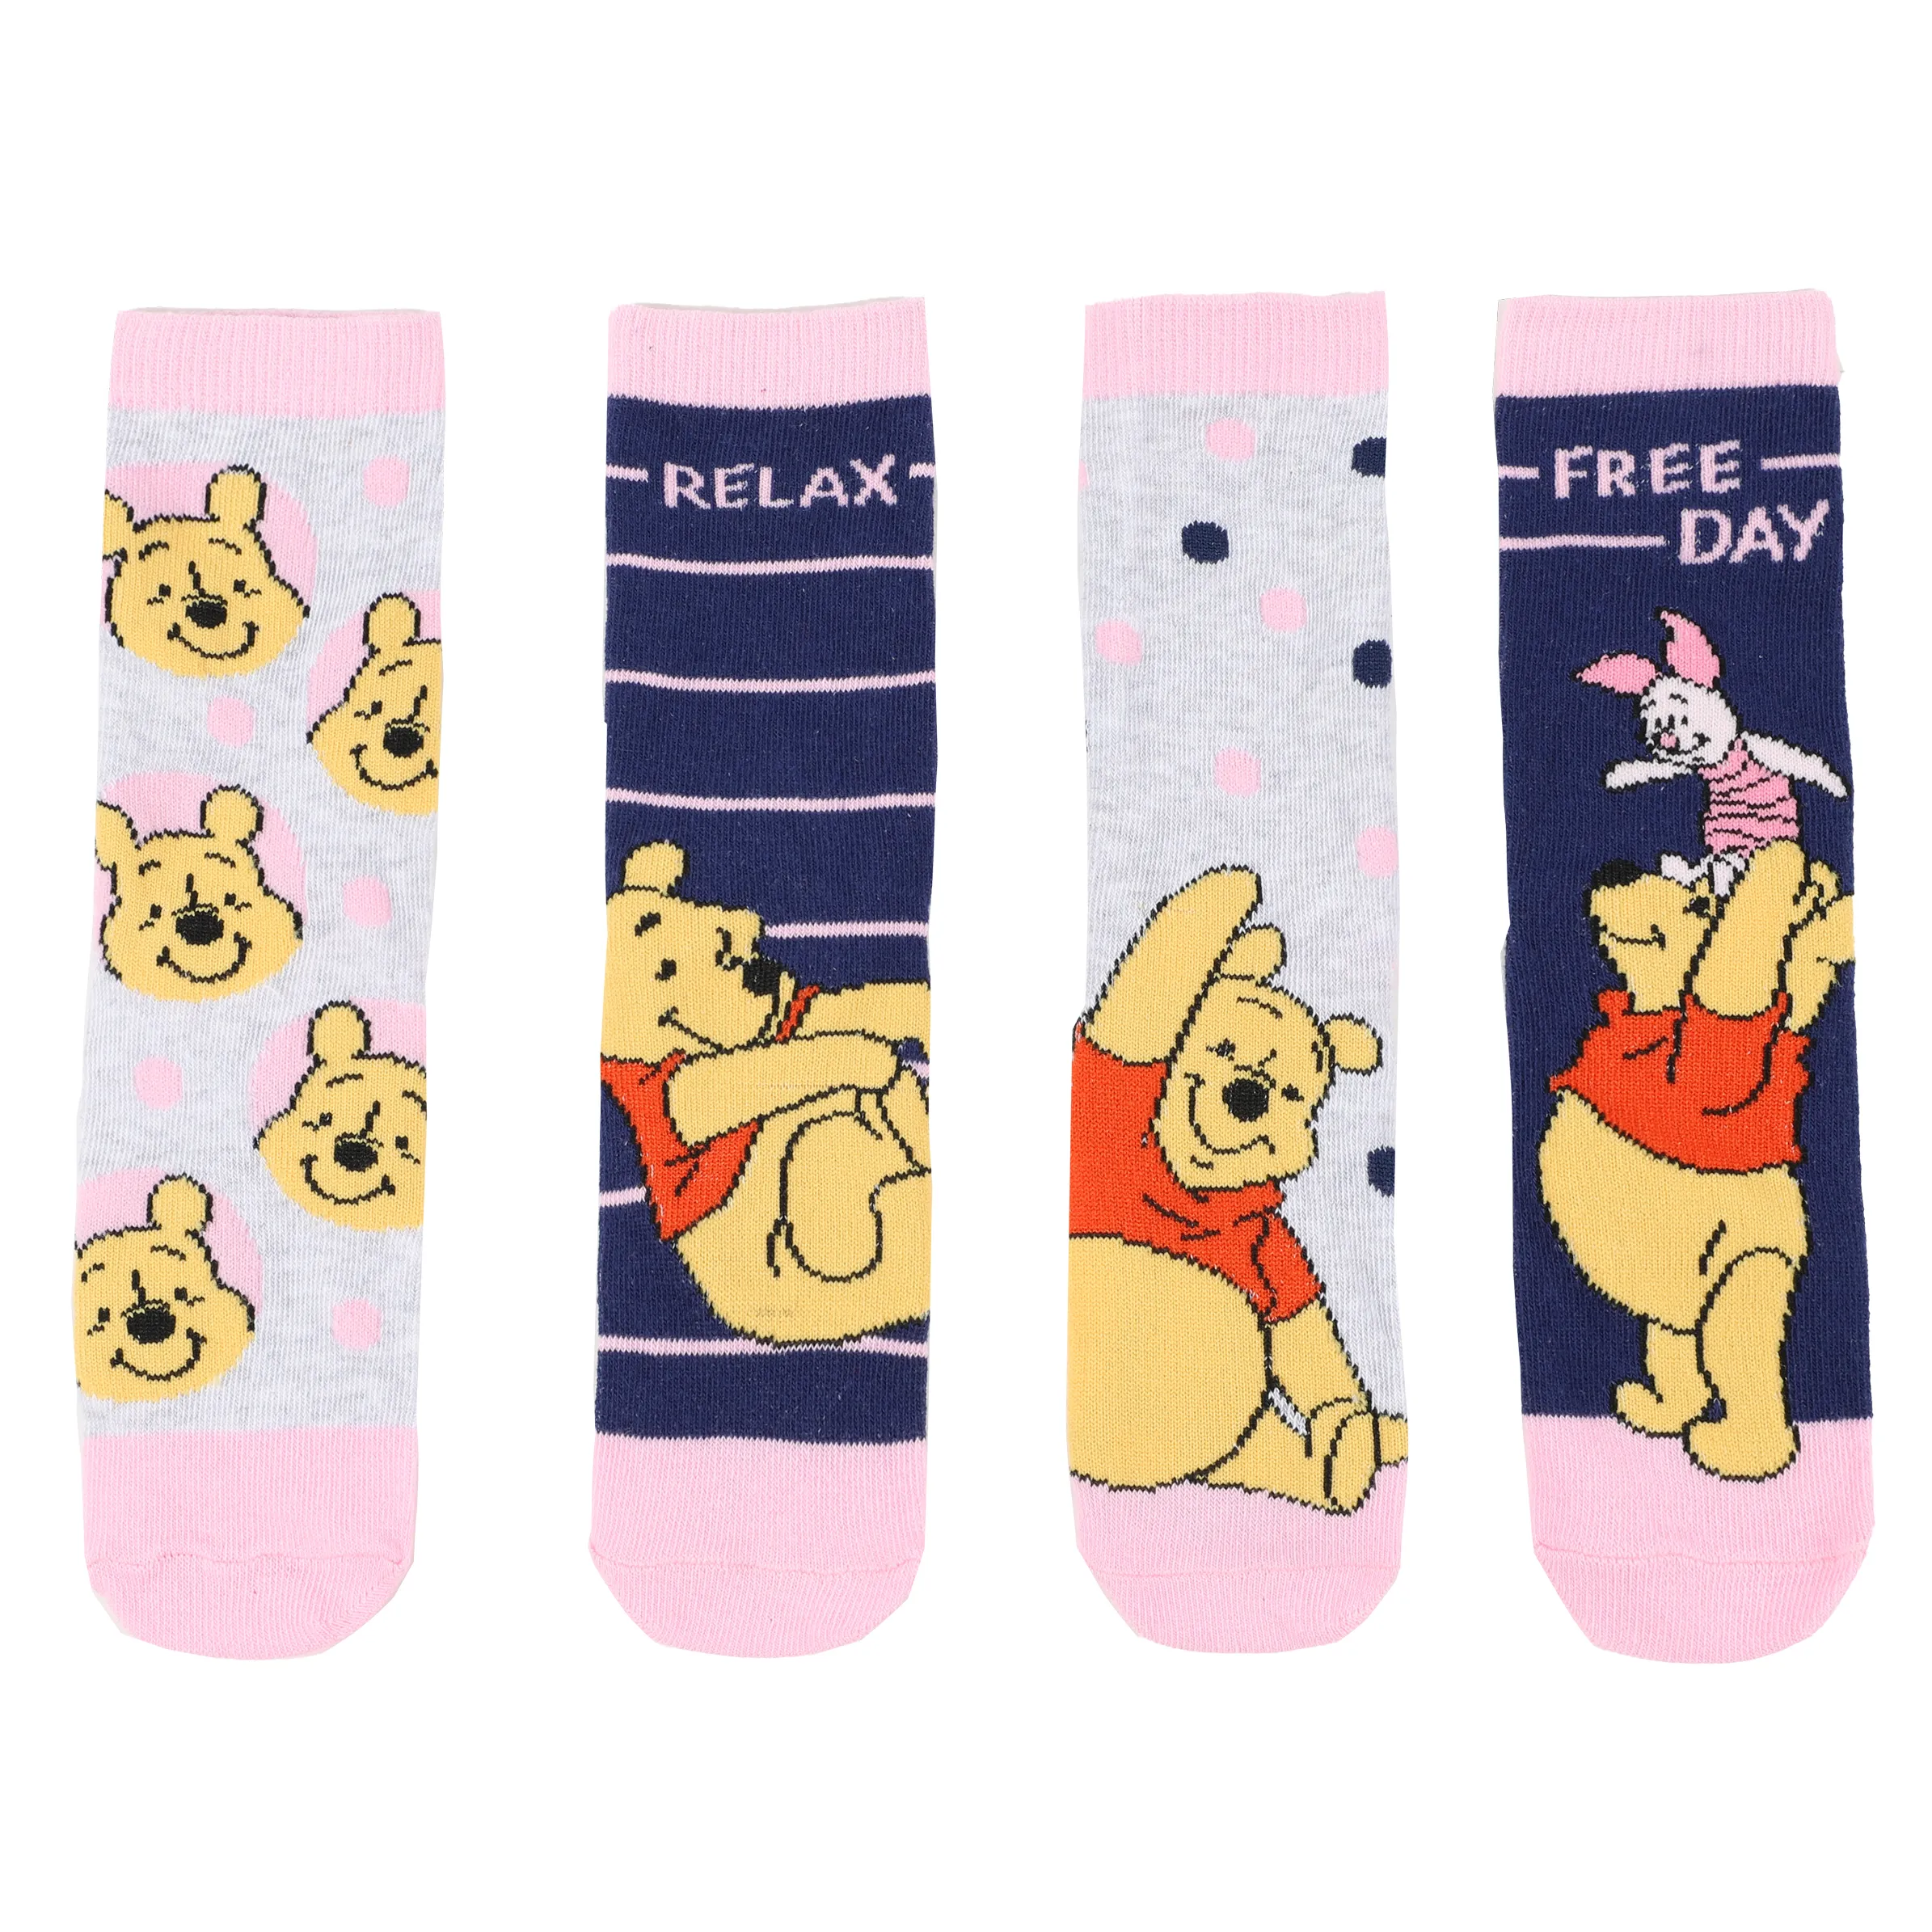 Winnie Pooh Km Socken 4er Pack Winnie Pooh Bunt 886142 BUNT 2